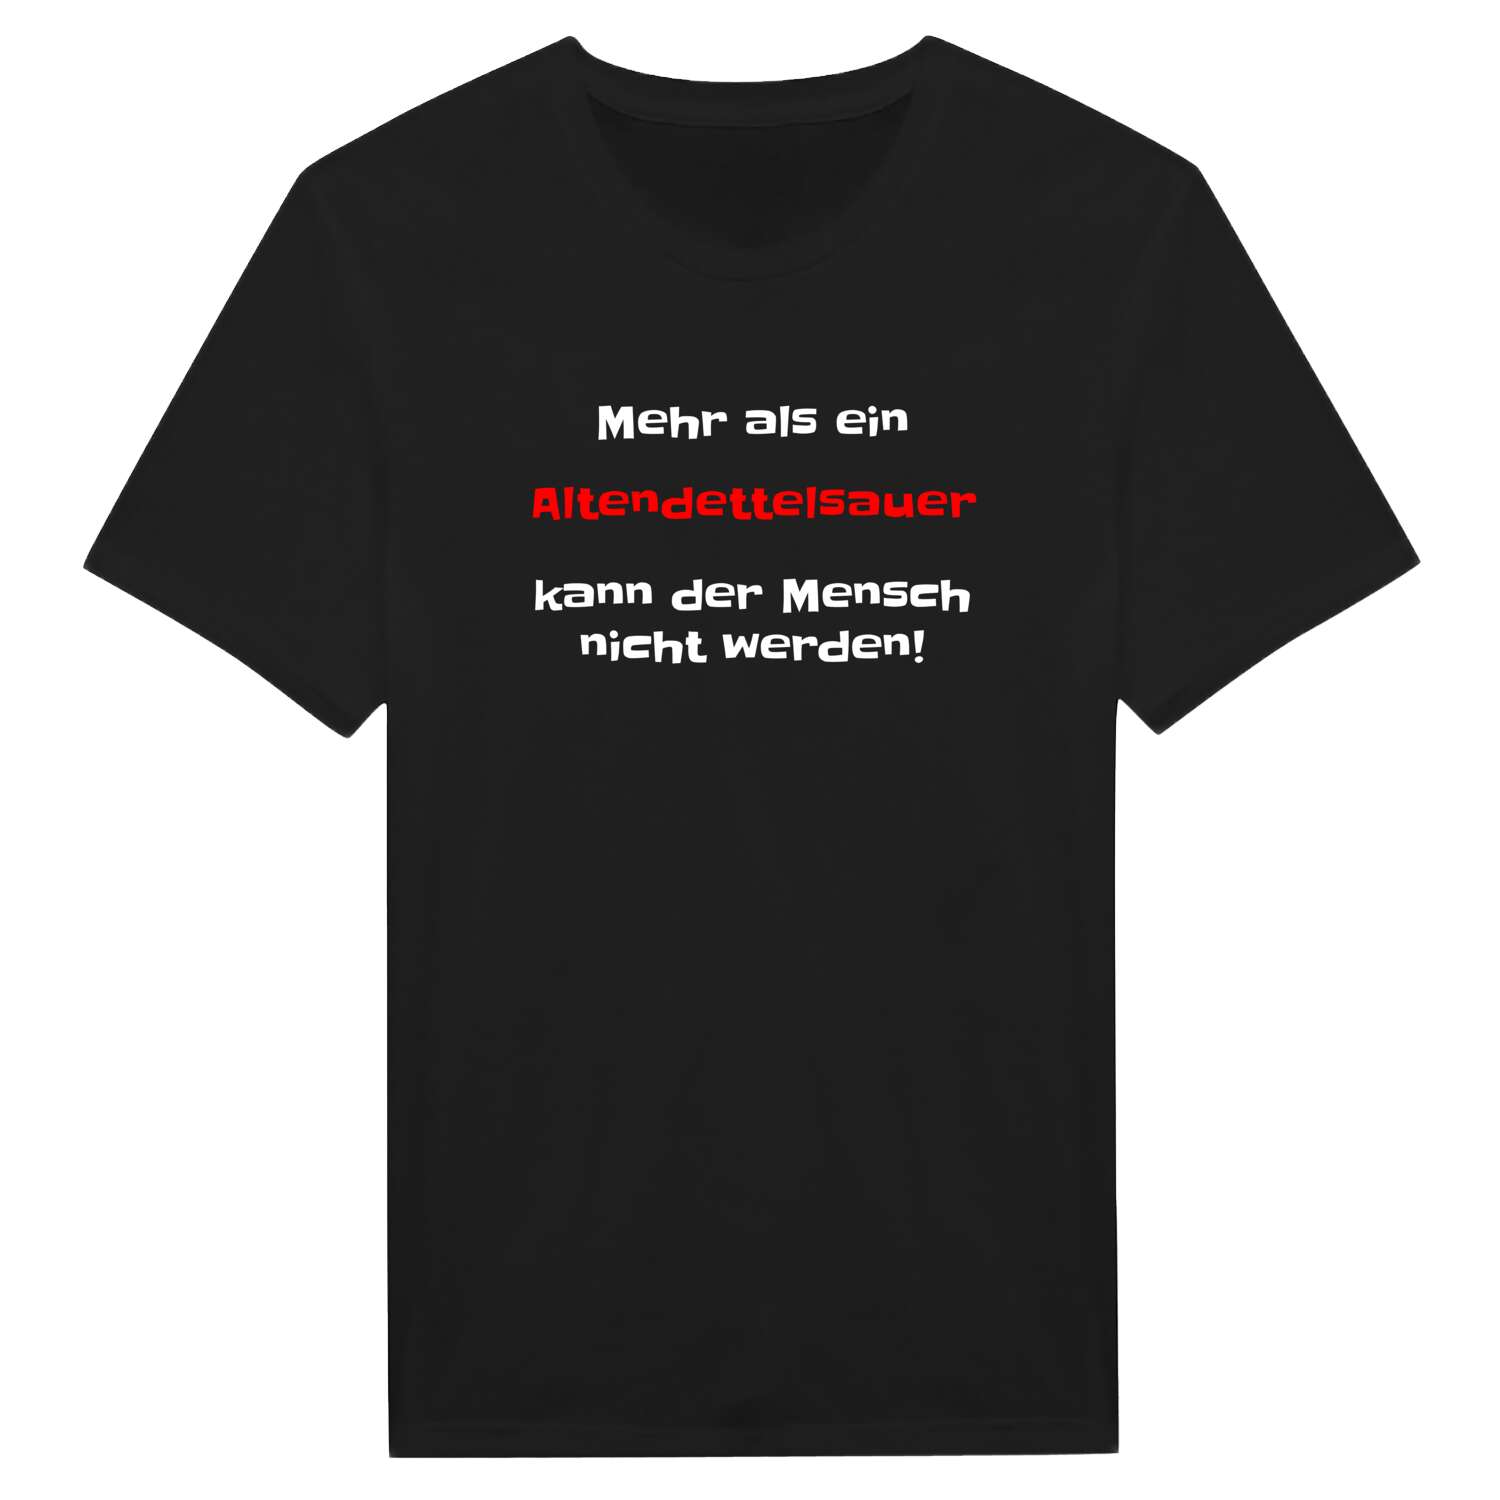 Altendettelsau T-Shirt »Mehr als ein«